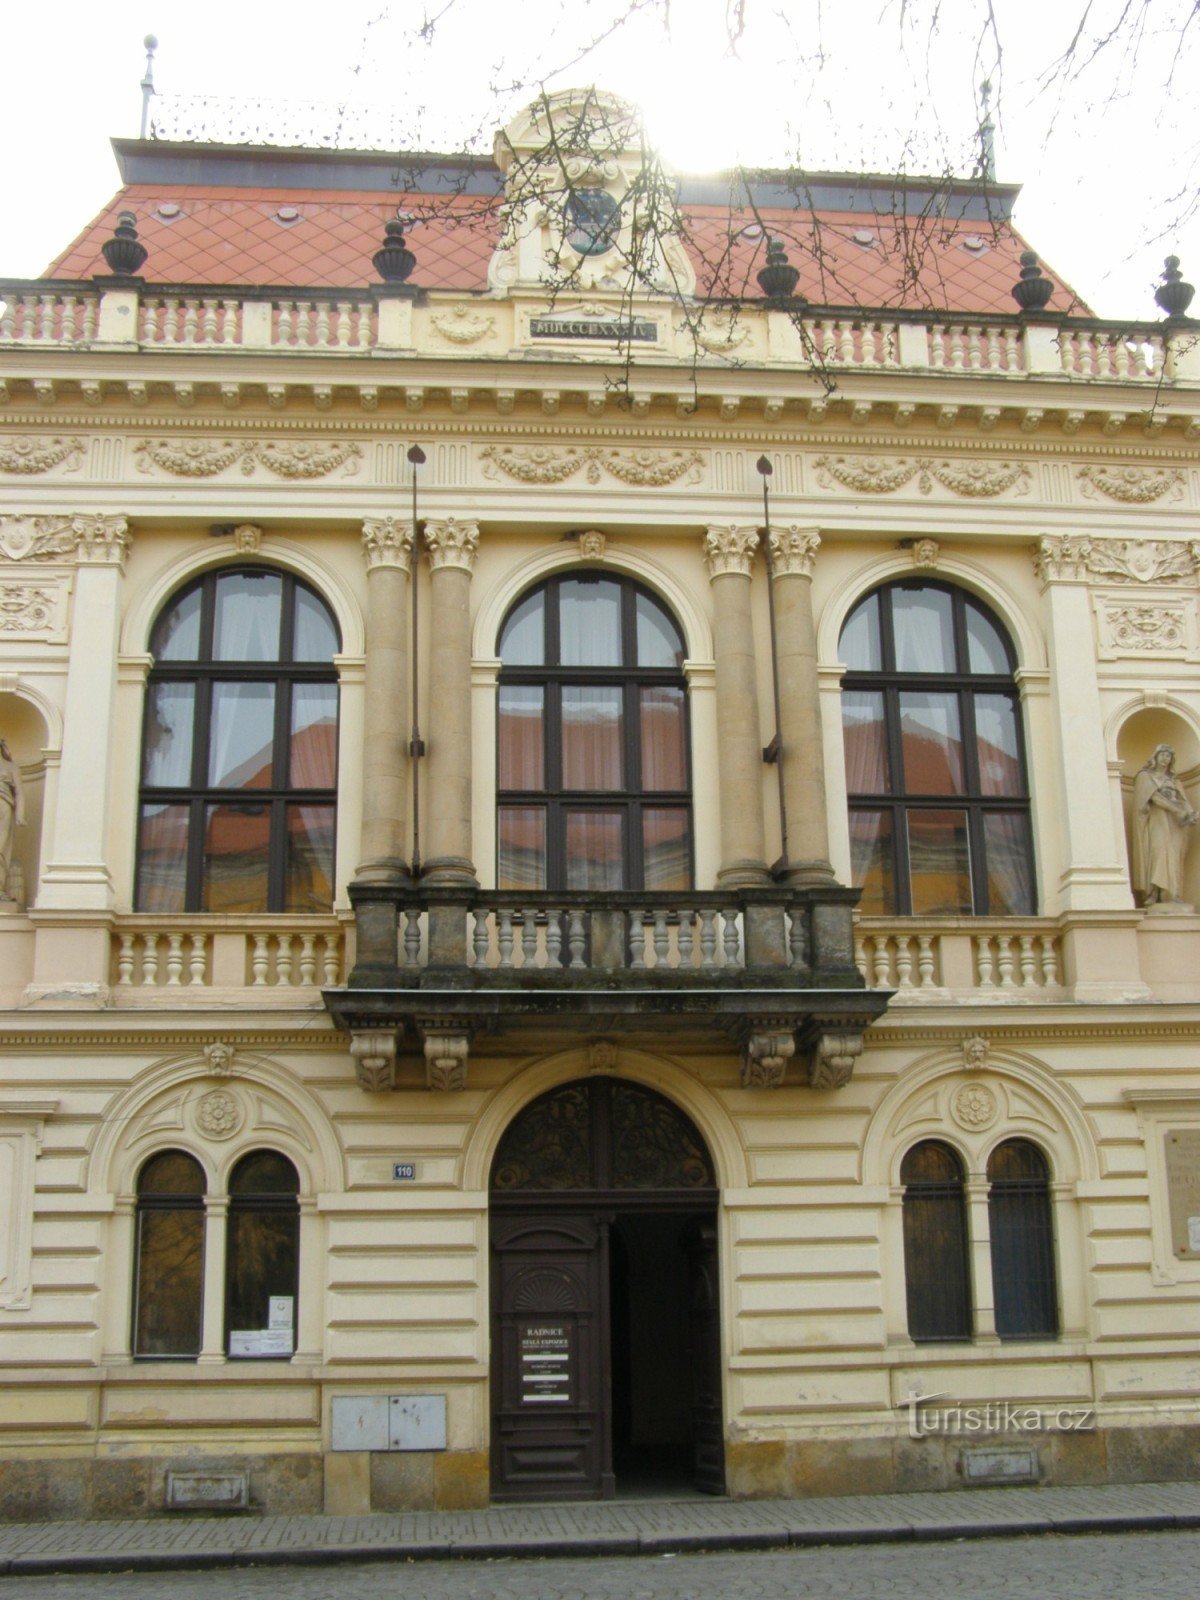 Josefov - Nyt rådhus, museum